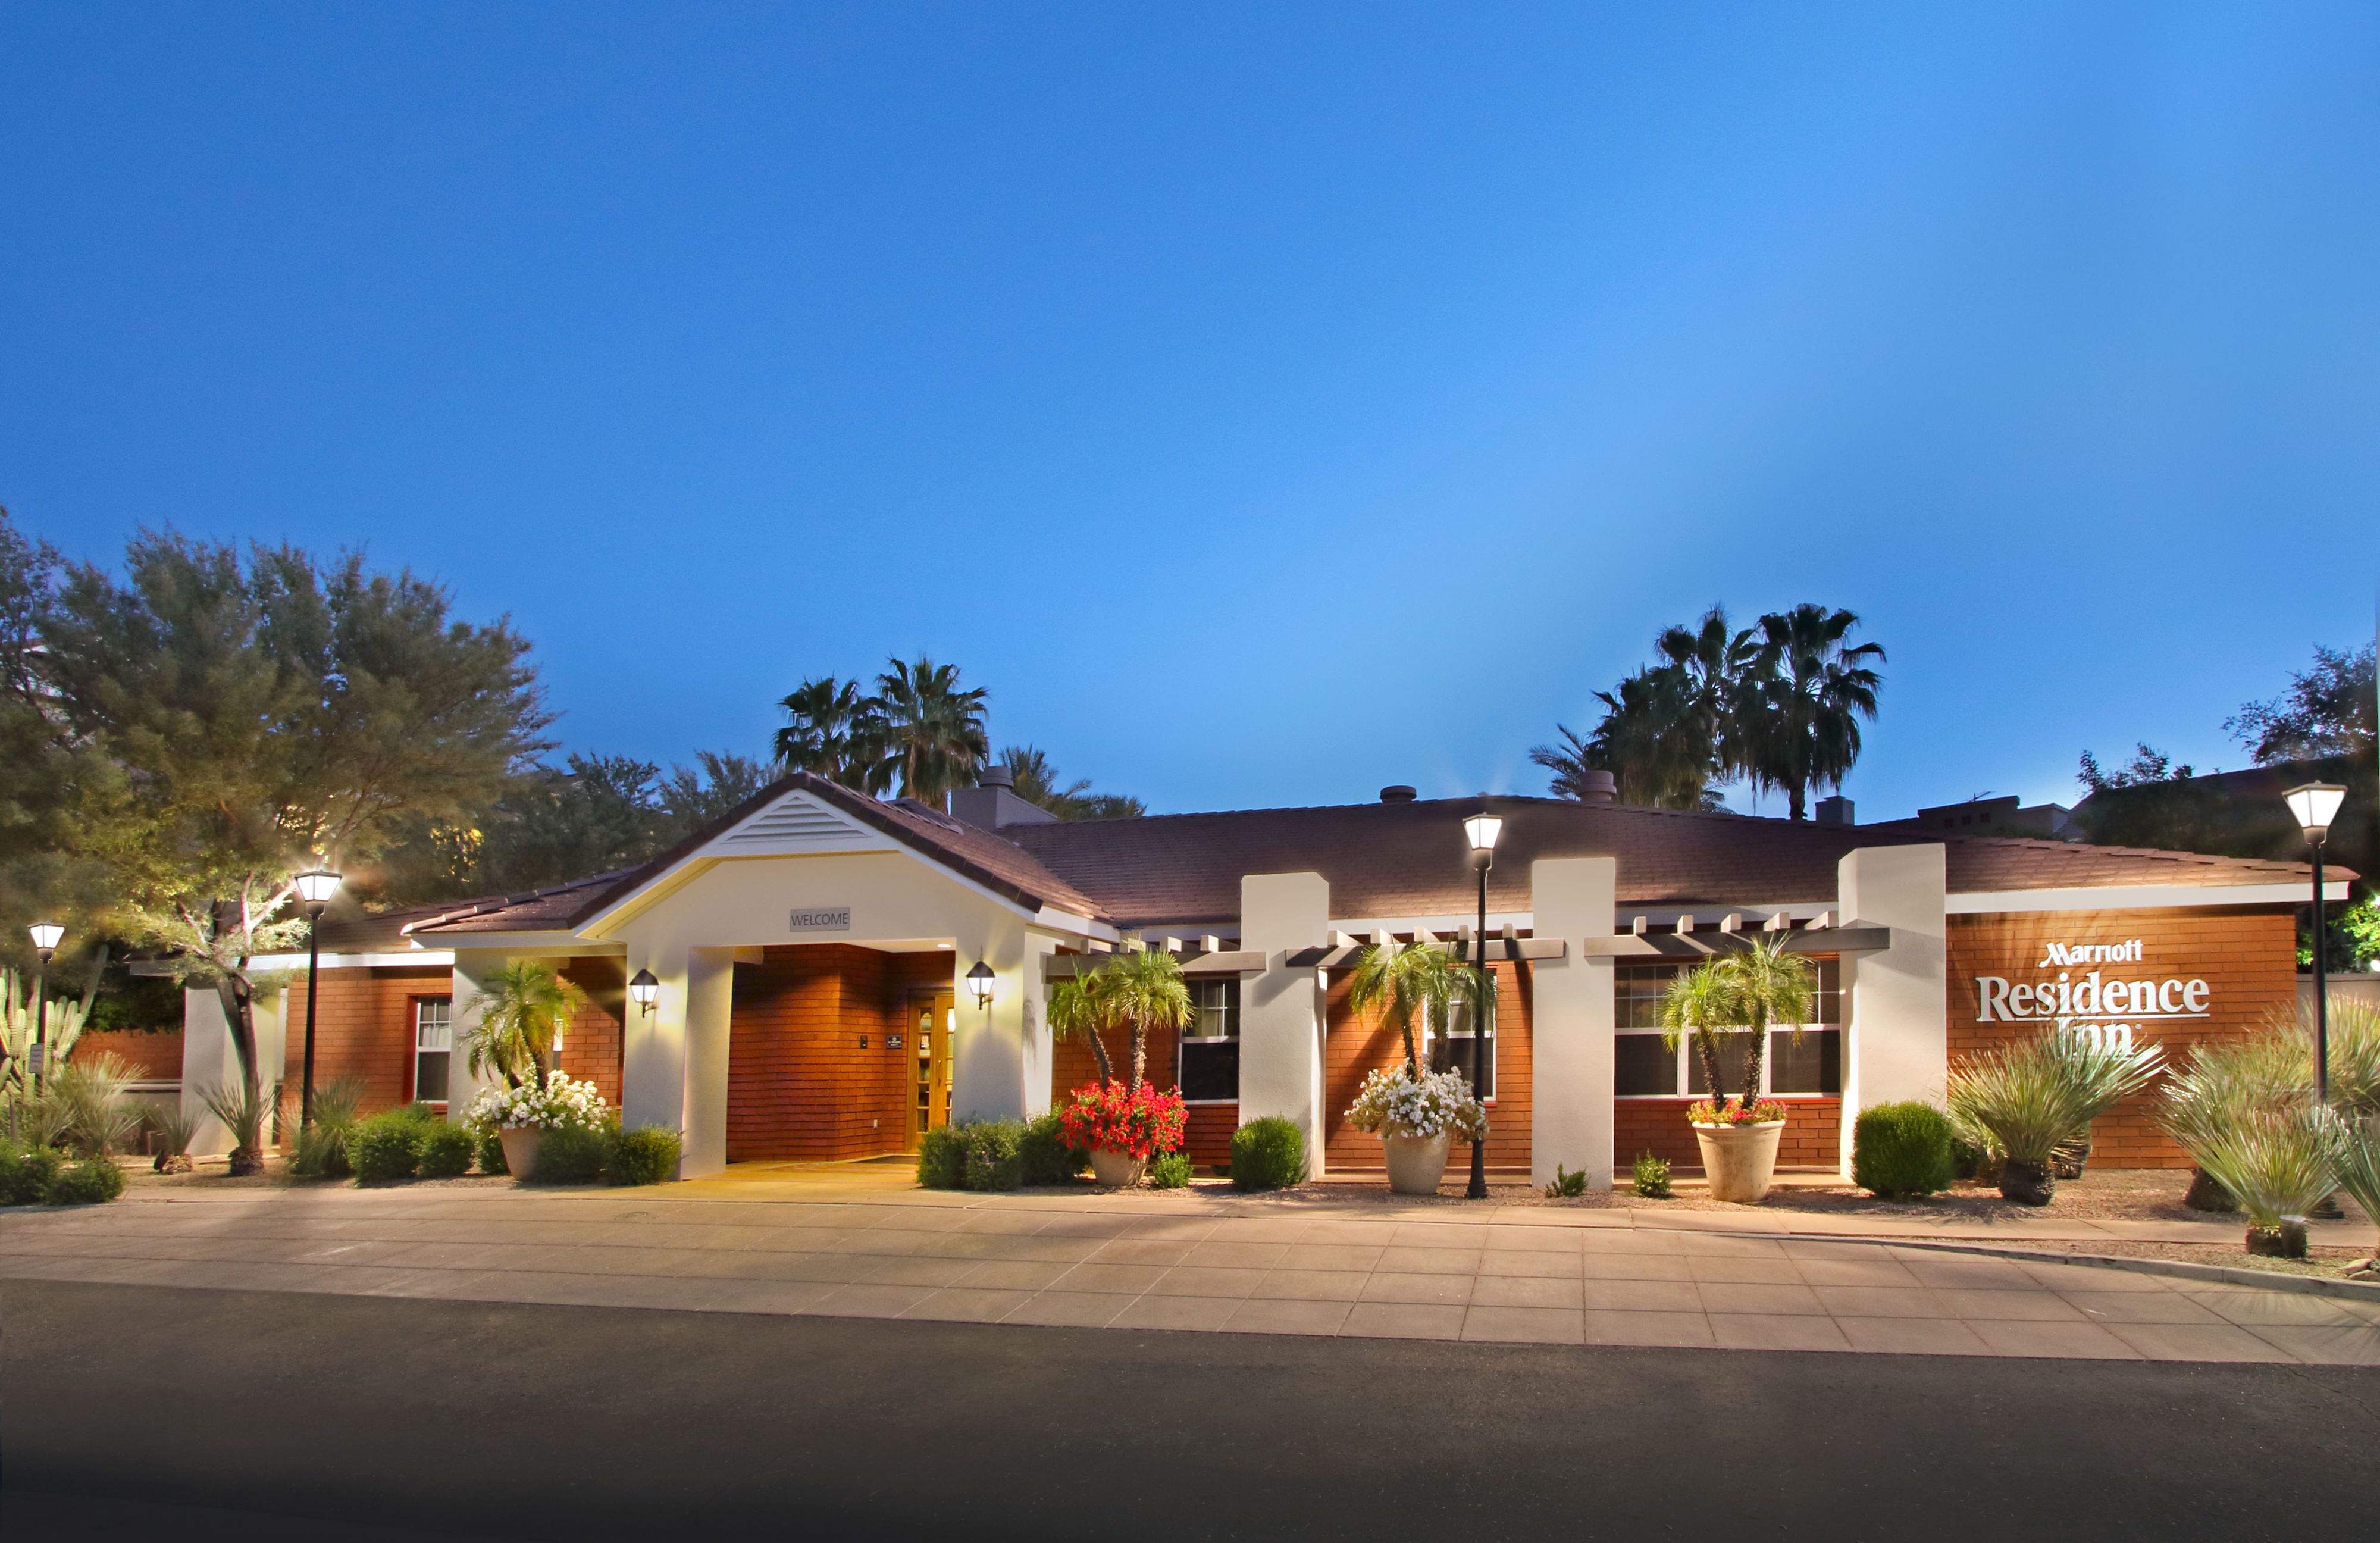 Photo of Residence Inn Scottsdale North, Scottsdale, AZ